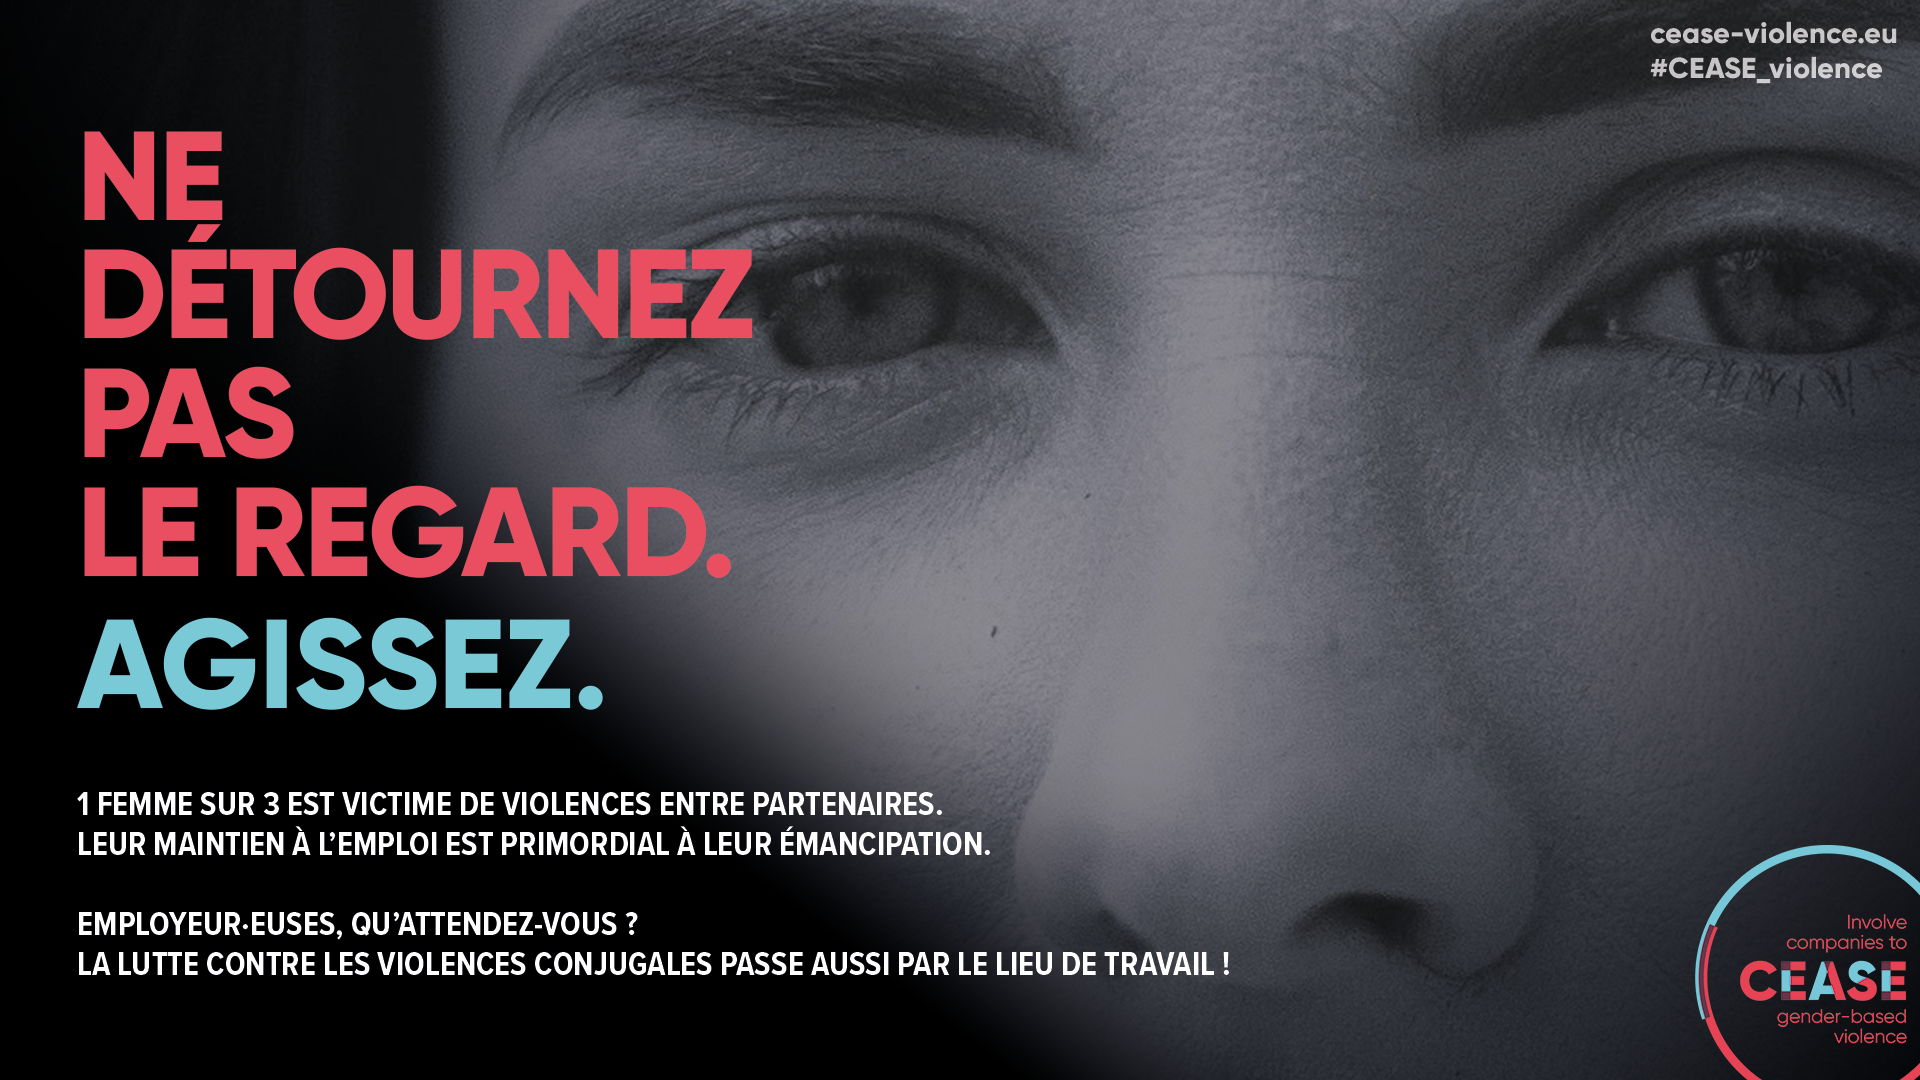 le réseau CEASE appelle les employeur.euses belges à s’engager dans la lutte contre les violences conjugales.